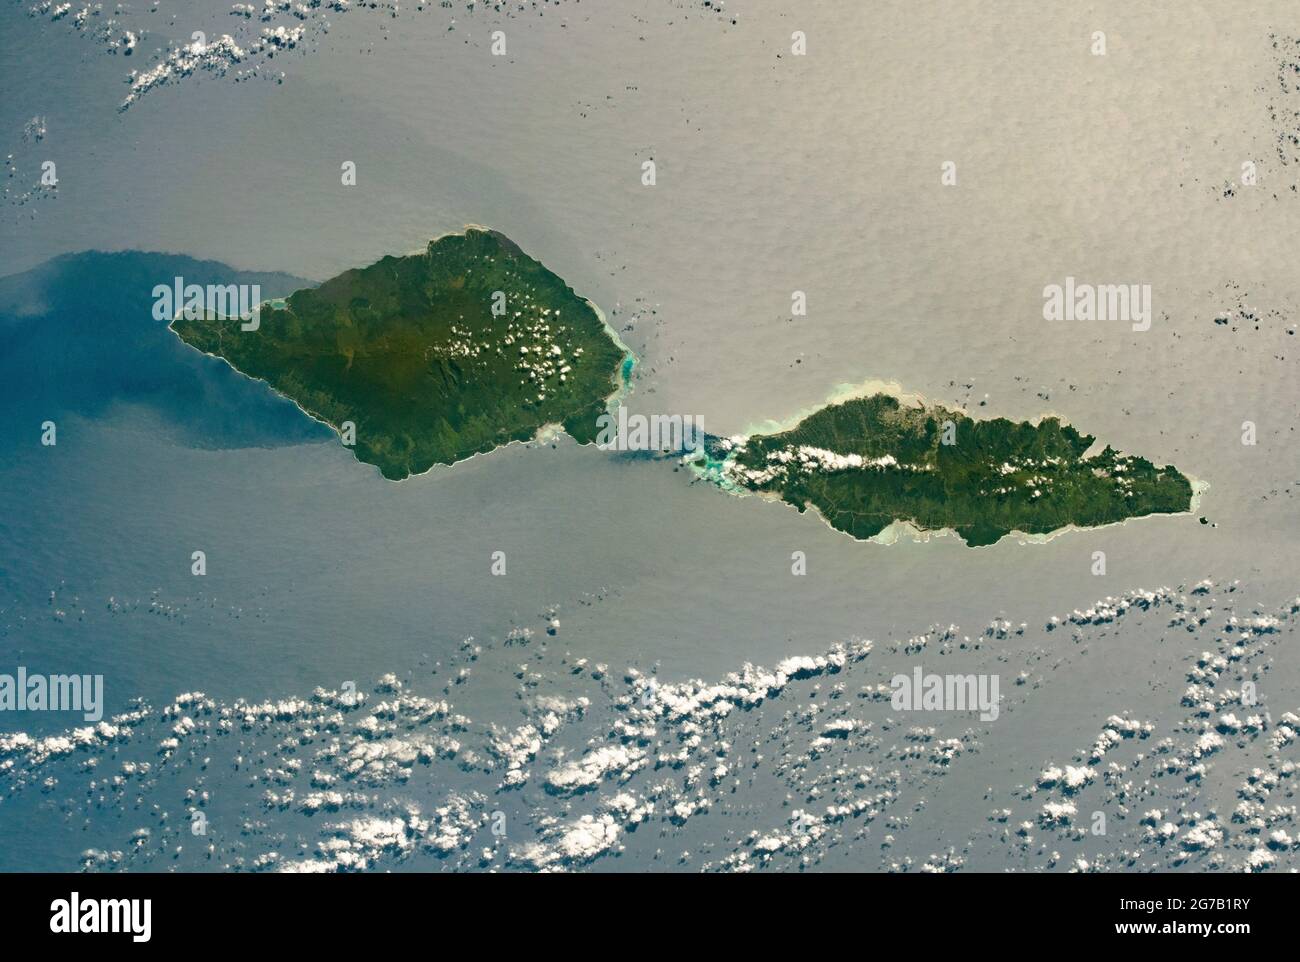 Savai'i y Upolu, Samoa, fotografiados desde la Estación Espacial Internacional cuando pasó sobre el Océano Pacífico Sur. Savai'i, la isla más occidental de Samoa, tiene 80 km (50 mi) de largo; Upolu es casi igual de largo (74 km/46 mi). Los centros de color verde oscuro de las islas reflejan los bosques tropicales más densos y las elevaciones más altas en comparación con las regiones costeras más bajas y de color verde claro alrededor de los bordes. El Estrecho de Apolima separa las 2 islas. Una versión única, optimizada y mejorada digitalmente de una imagen de NASA / crédito de la NASA Foto de stock